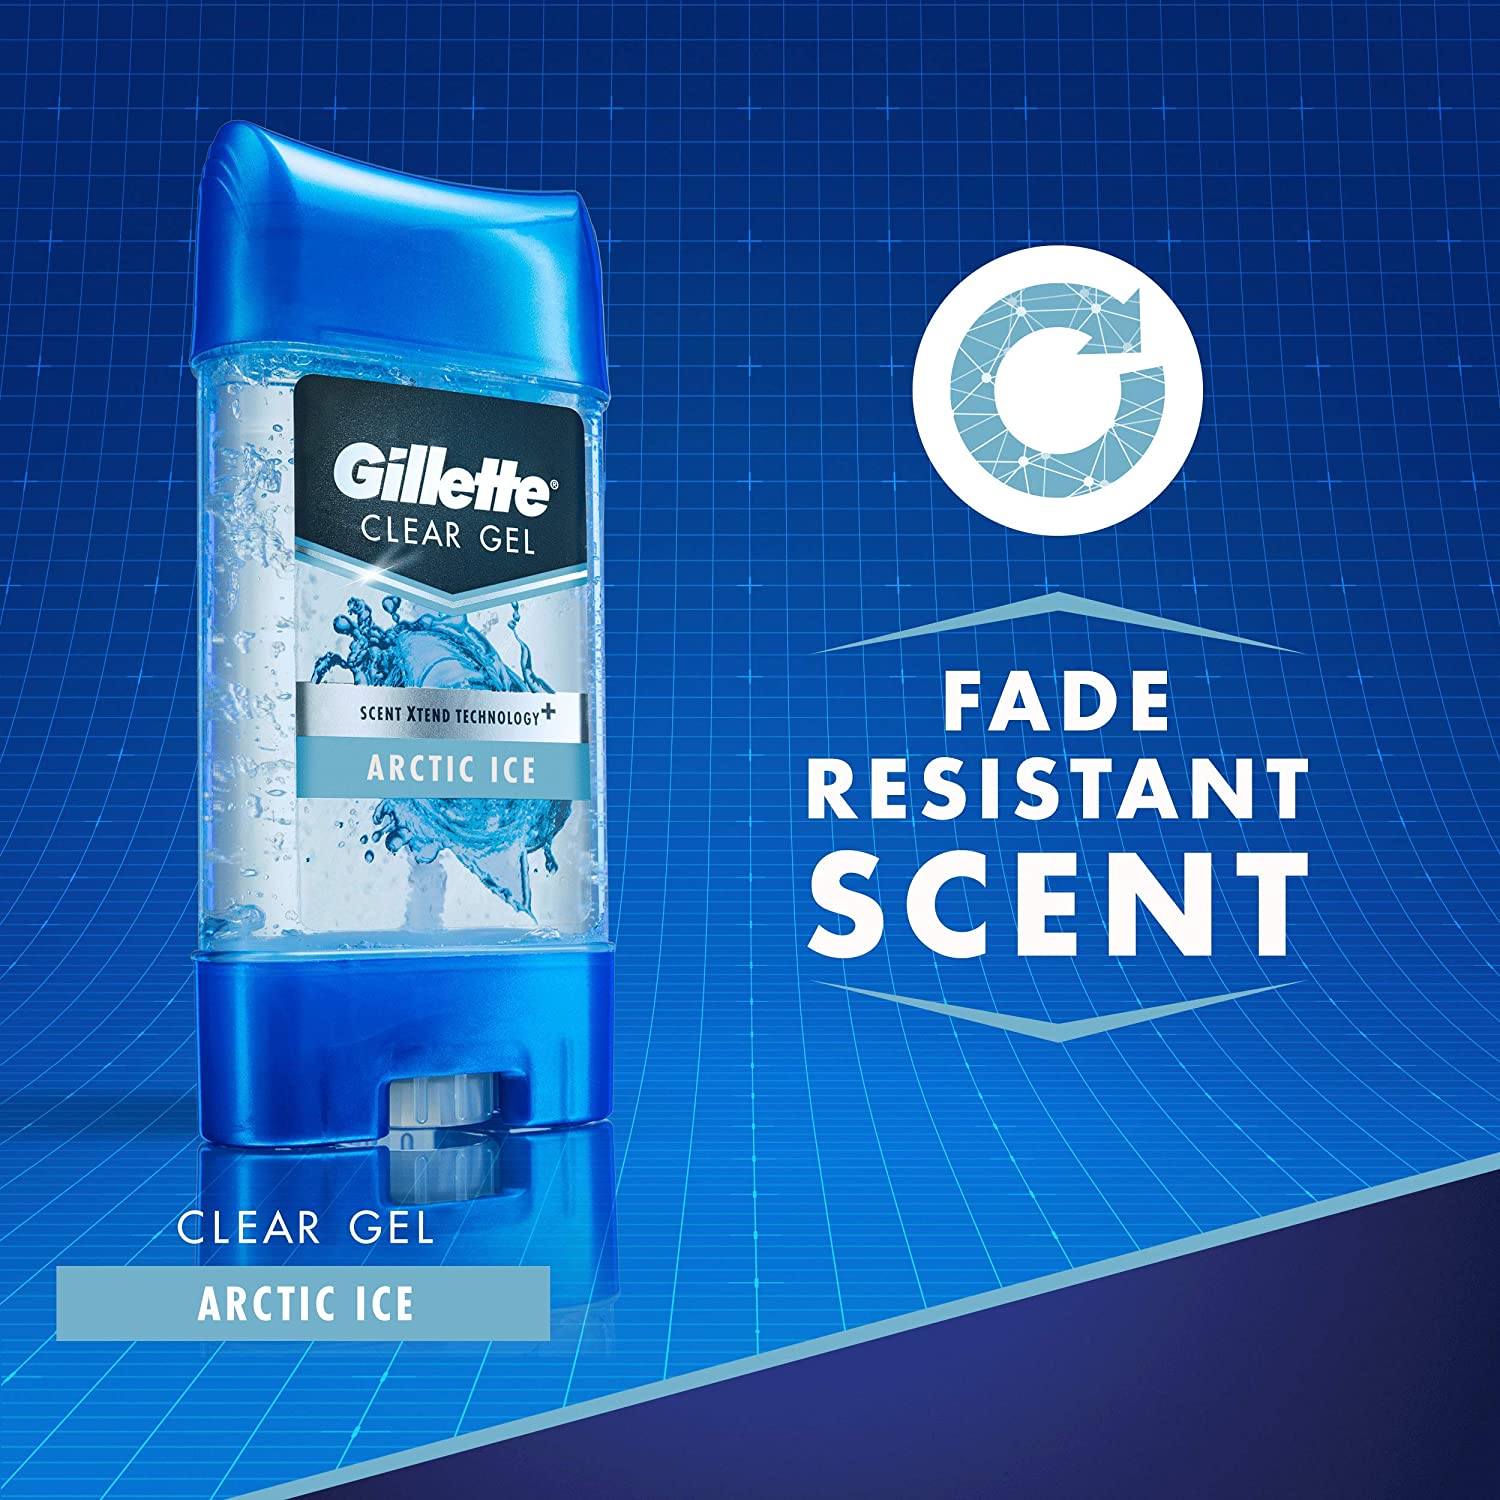 Gillette Arctic Ice Deodorant Stick